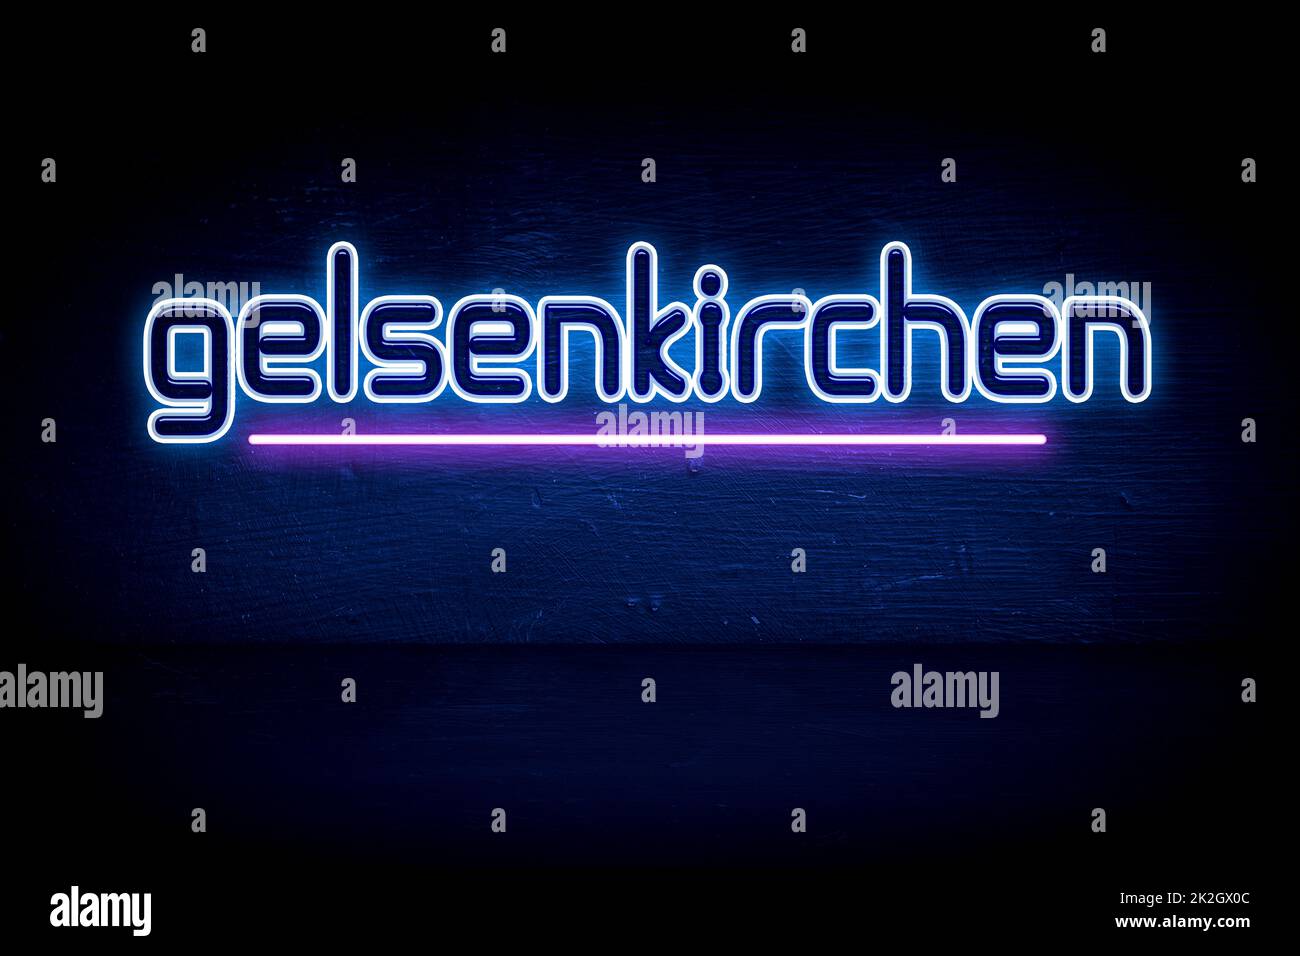 Gelsenkirchen - panneau d'annonce au néon bleu Banque D'Images